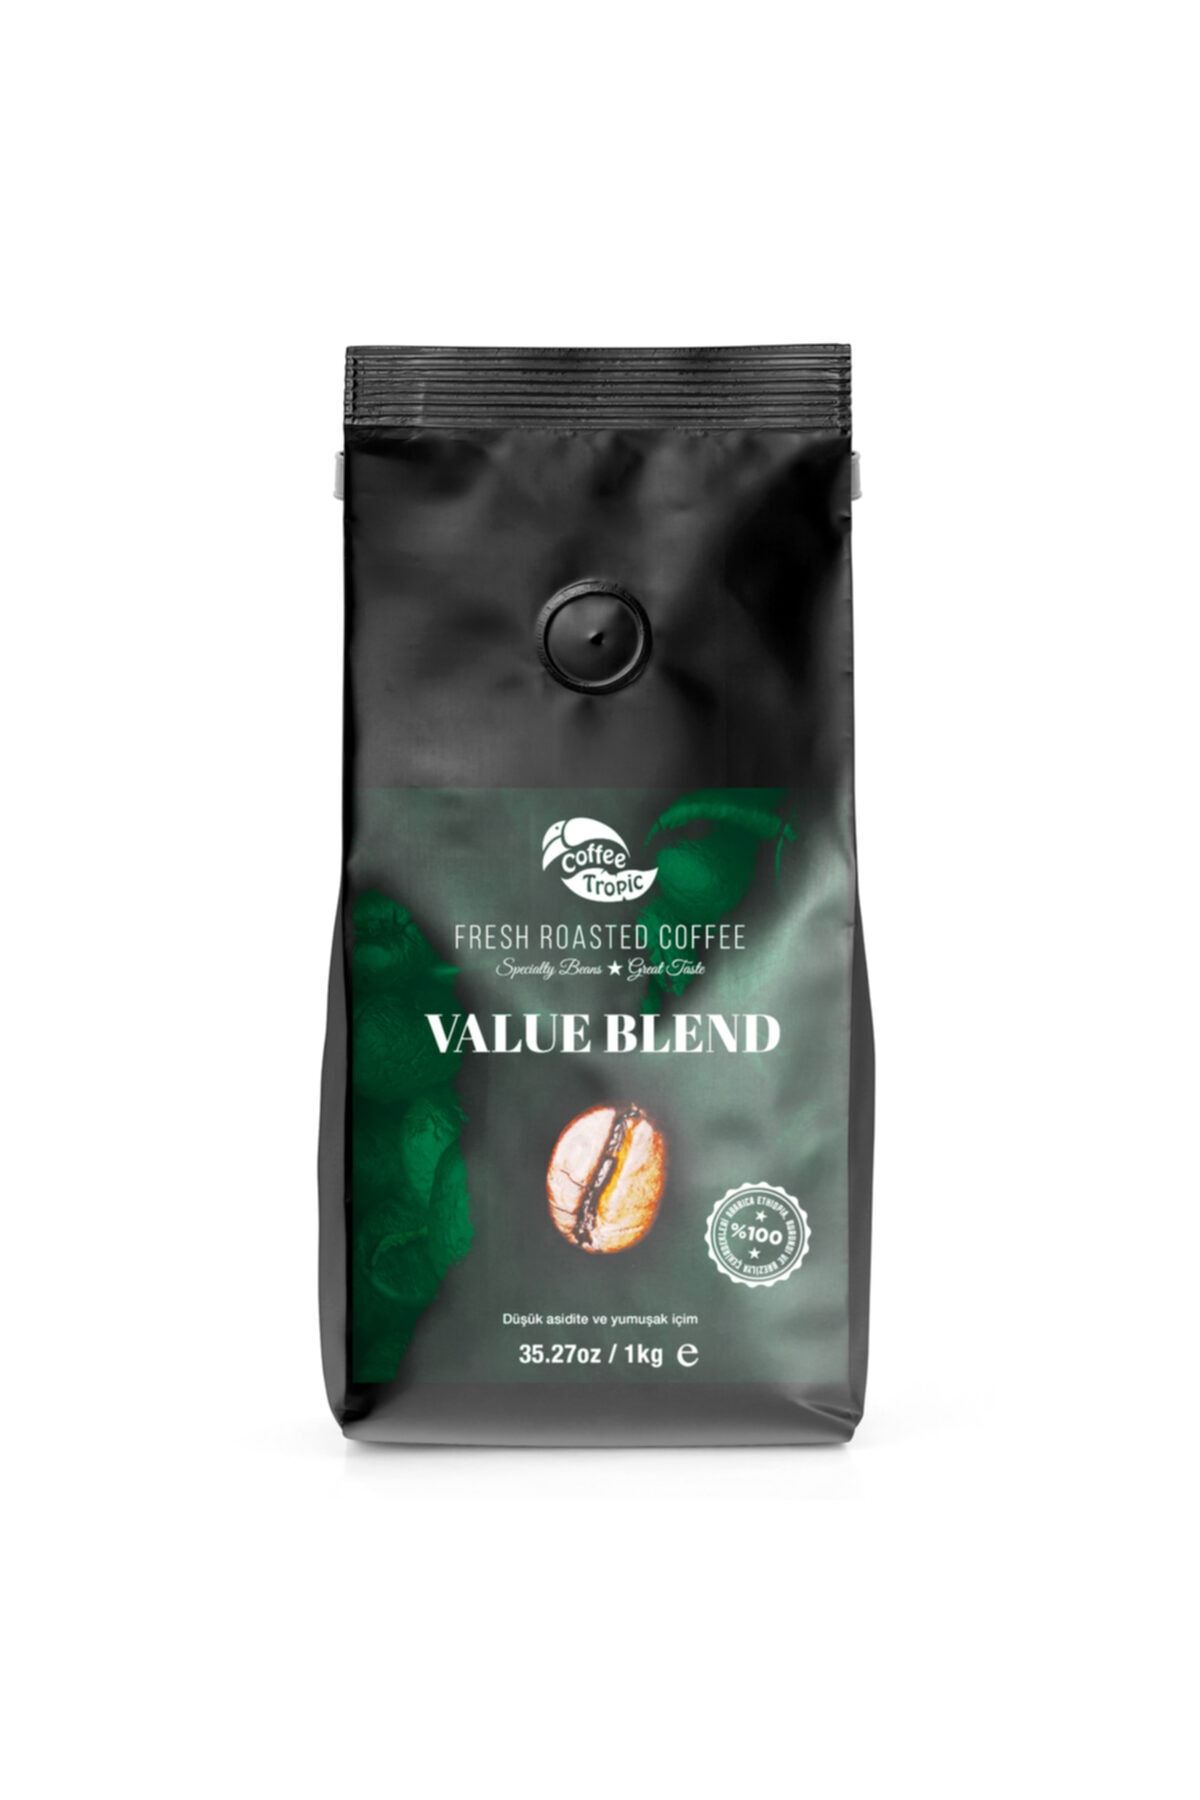 Coffee Tropic Value Blend 1 Kg Çekirdek